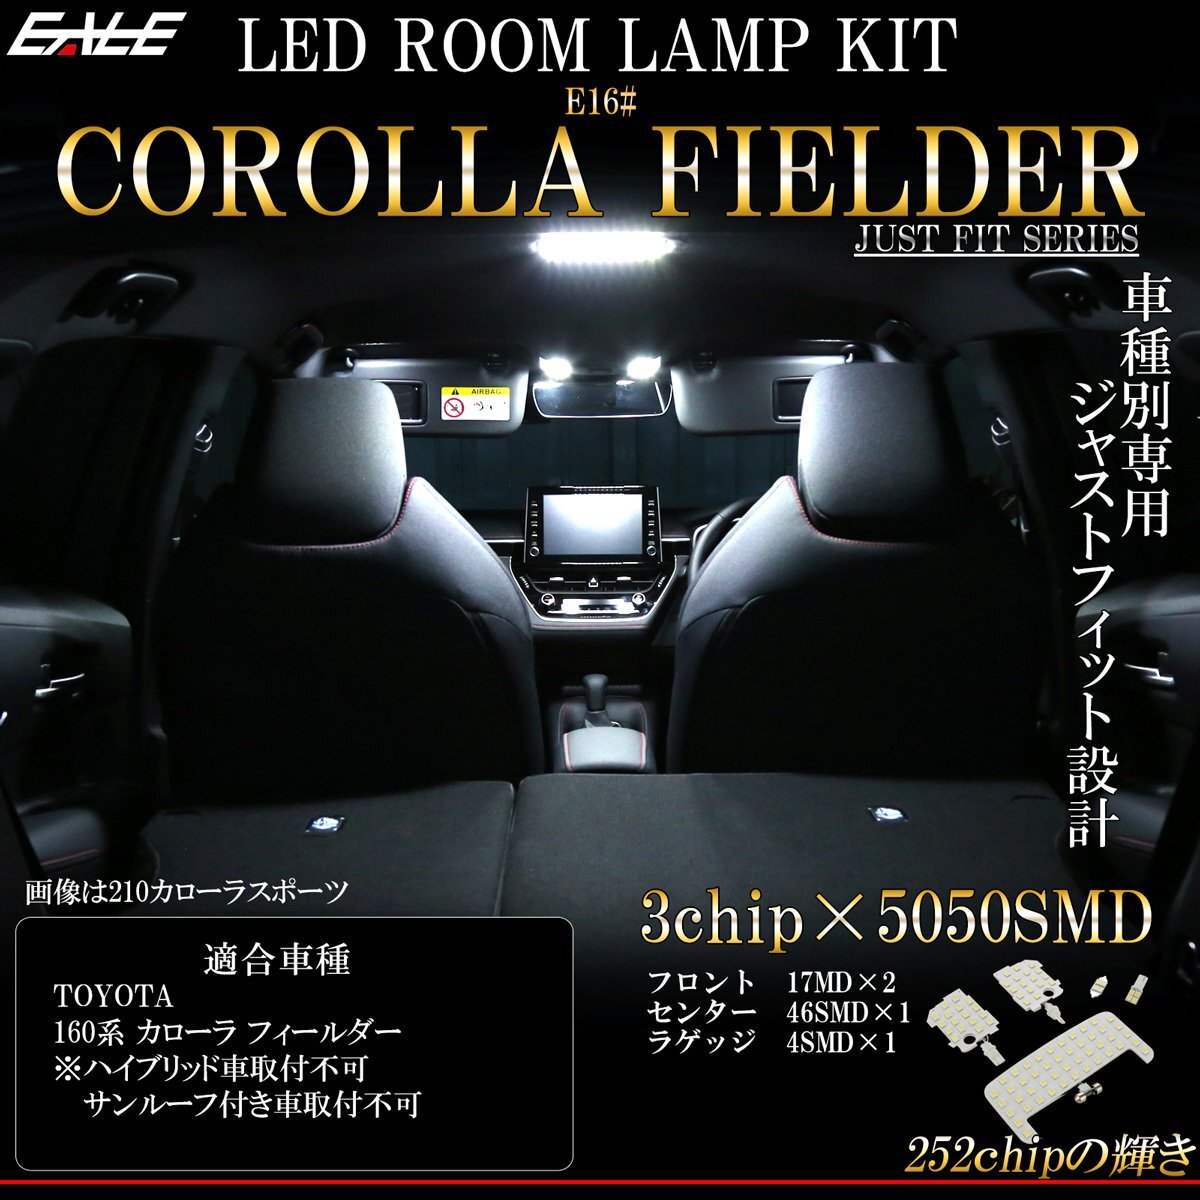 160系 カローラ フィールダー LED ルームランプ 専用設計 前期 後期 純白光 7000K ホワイト R-487_画像1